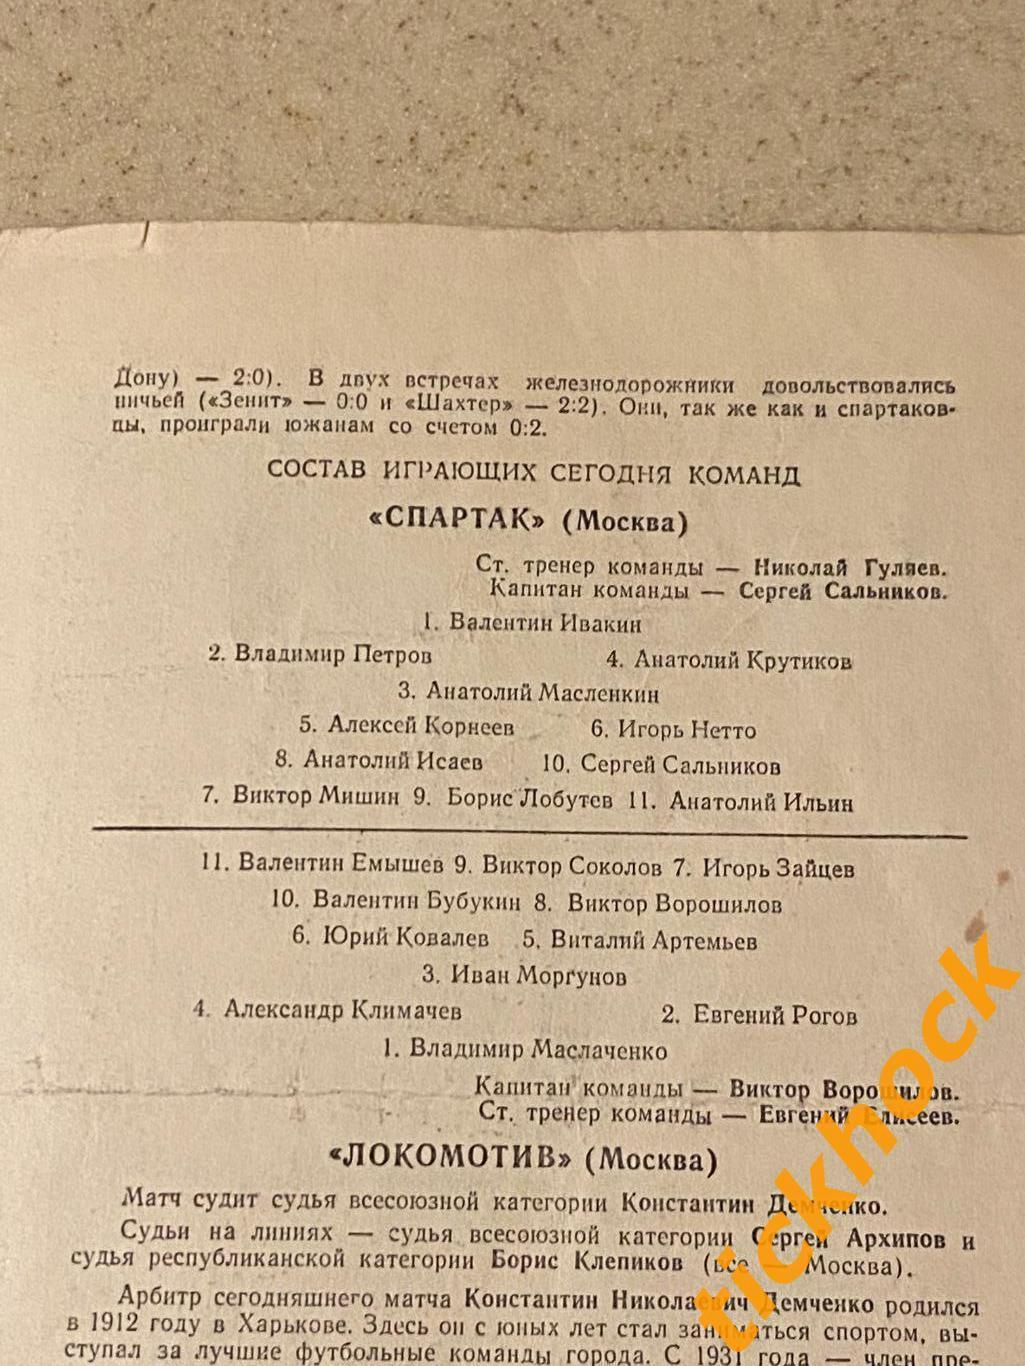 Спартак Москва - Локомотив Москва 15.10.1959 Первенство СССР - SY